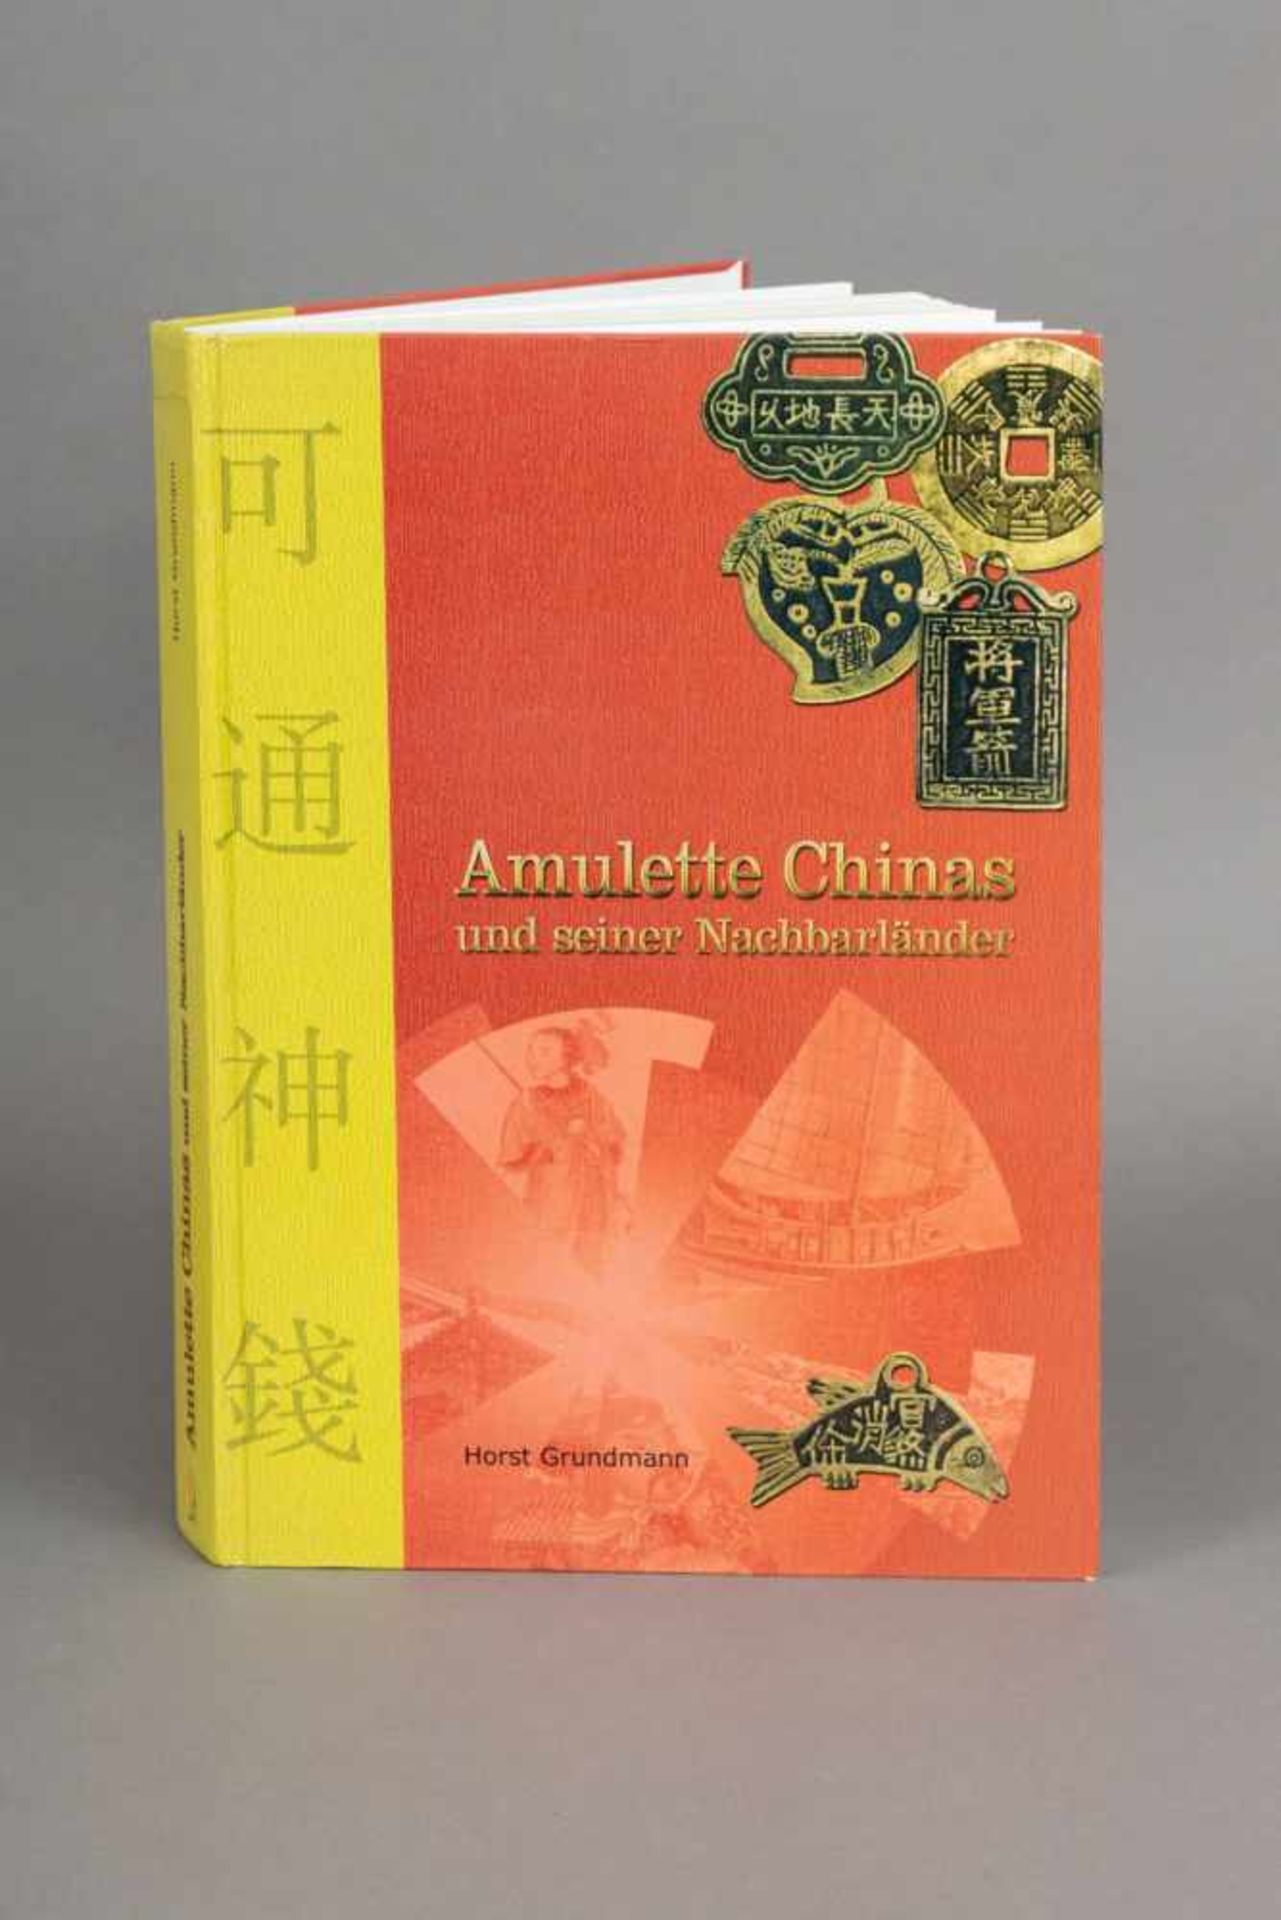 Buch ¨Amulette Chinas und seiner Nachbarländer¨Herausgeber Horst Grundmann, Reppa Verlag, 2003, sehr - Bild 2 aus 4